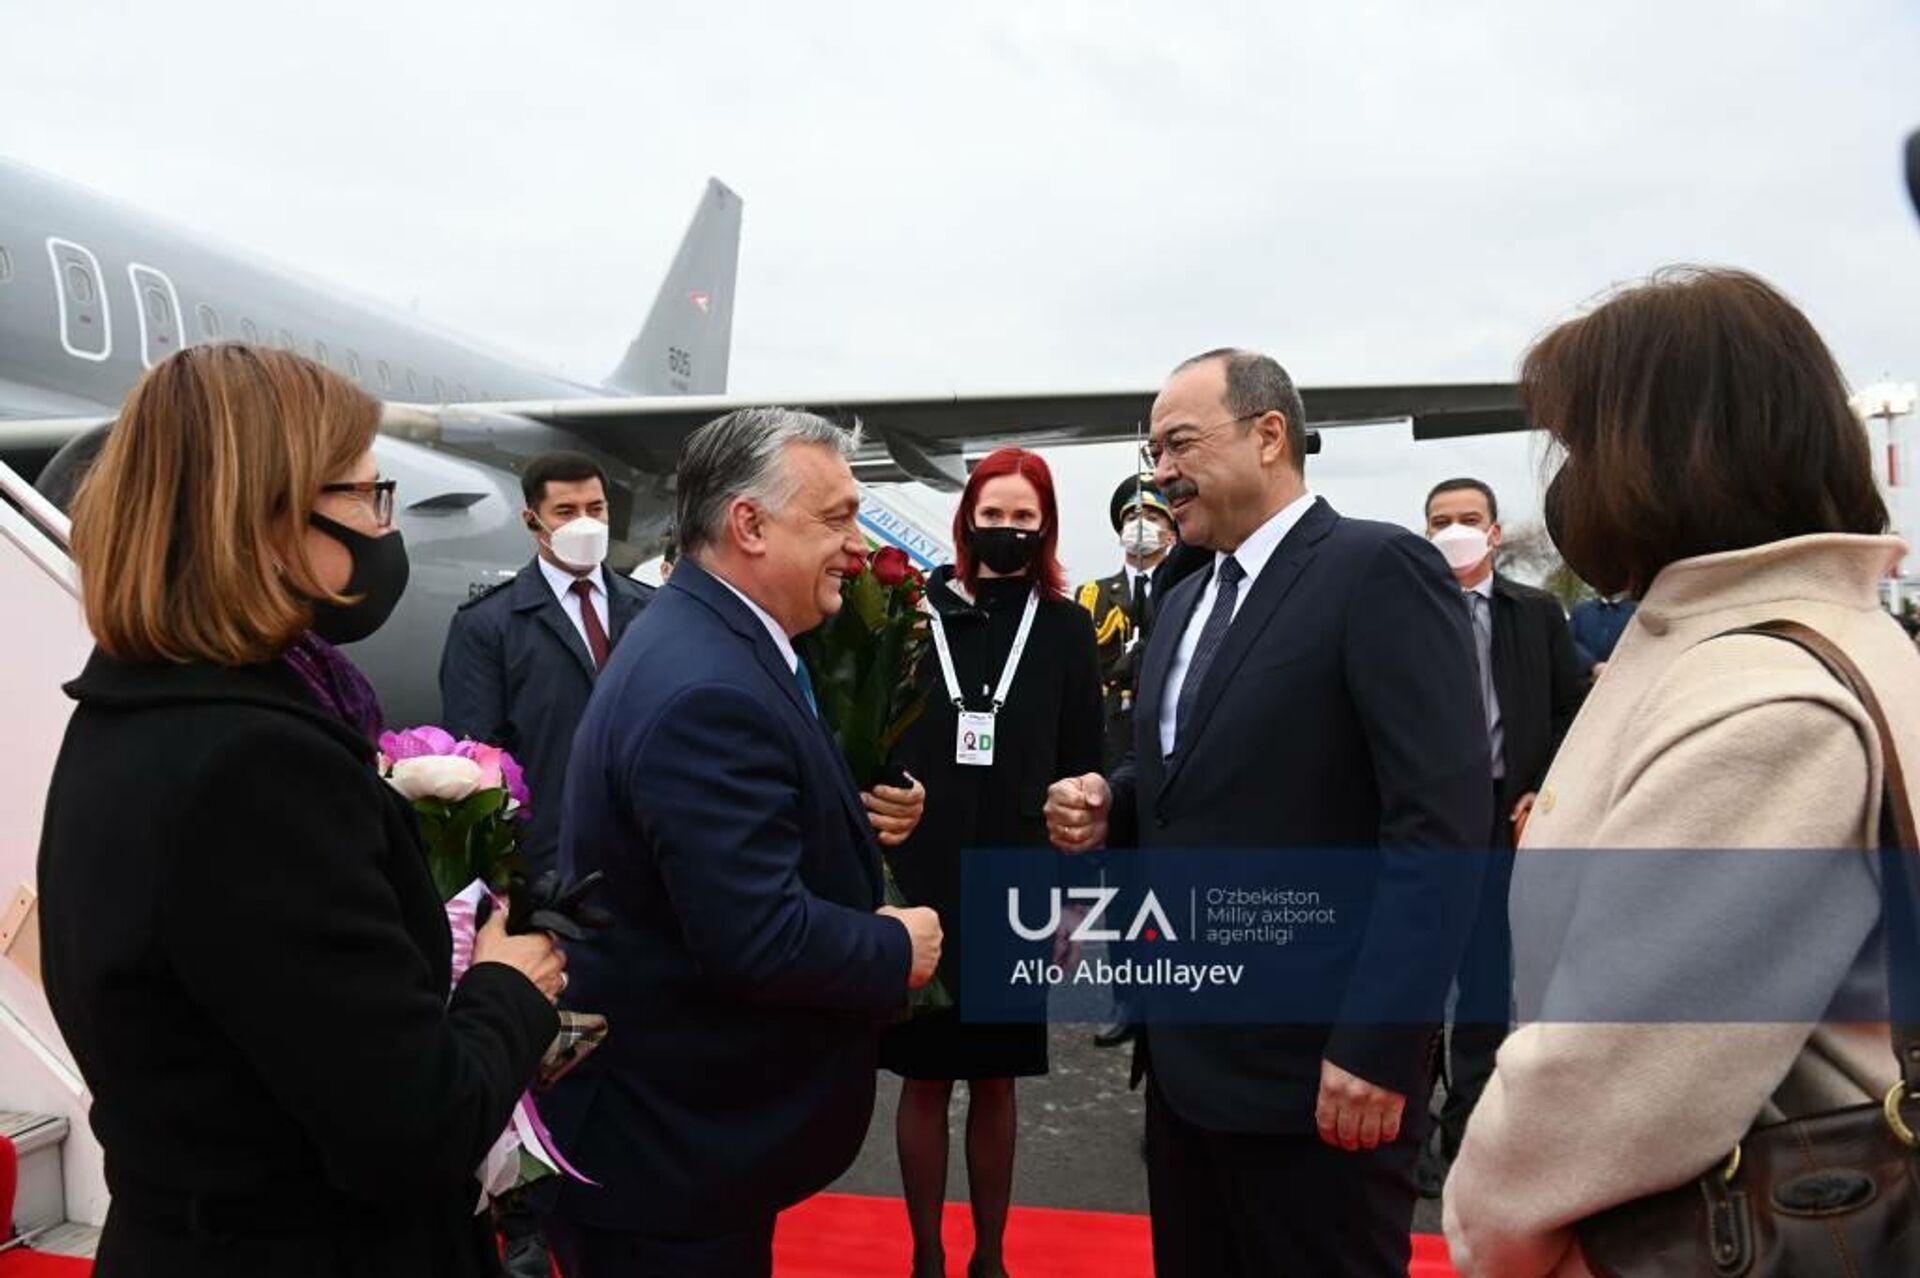 Премьер-министр Венгрии Виктор Орбан прибыл в Узбекистан - Sputnik Узбекистан, 1920, 29.03.2021